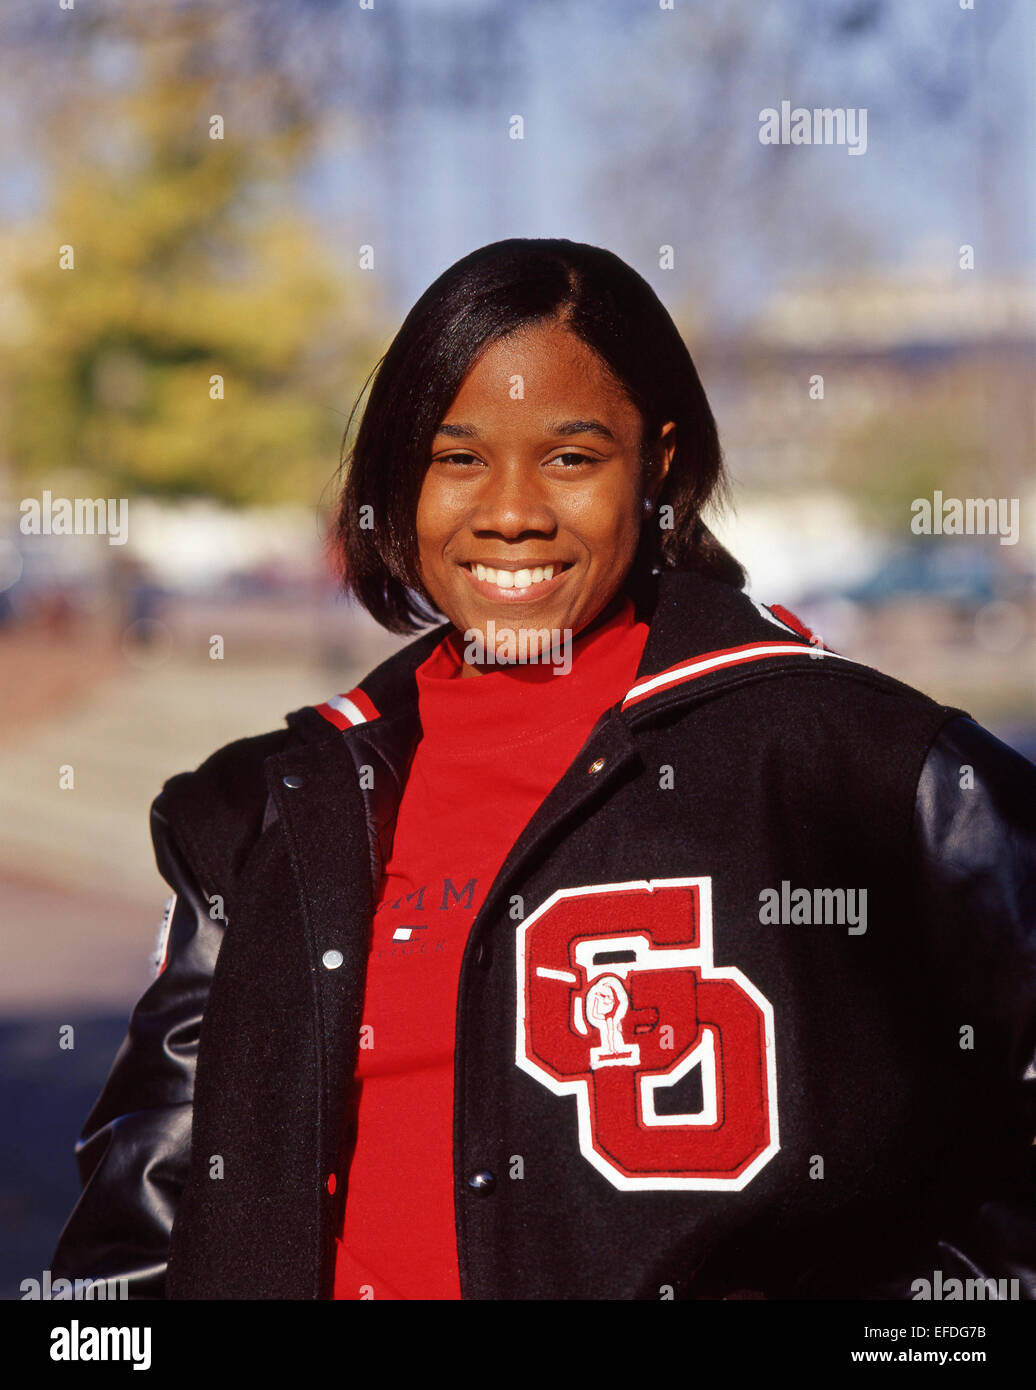 Schwarzer amerikanischer Teenager, Lächeln, Memphis, Tennessee, Vereinigte Staaten von Amerika Stockfoto